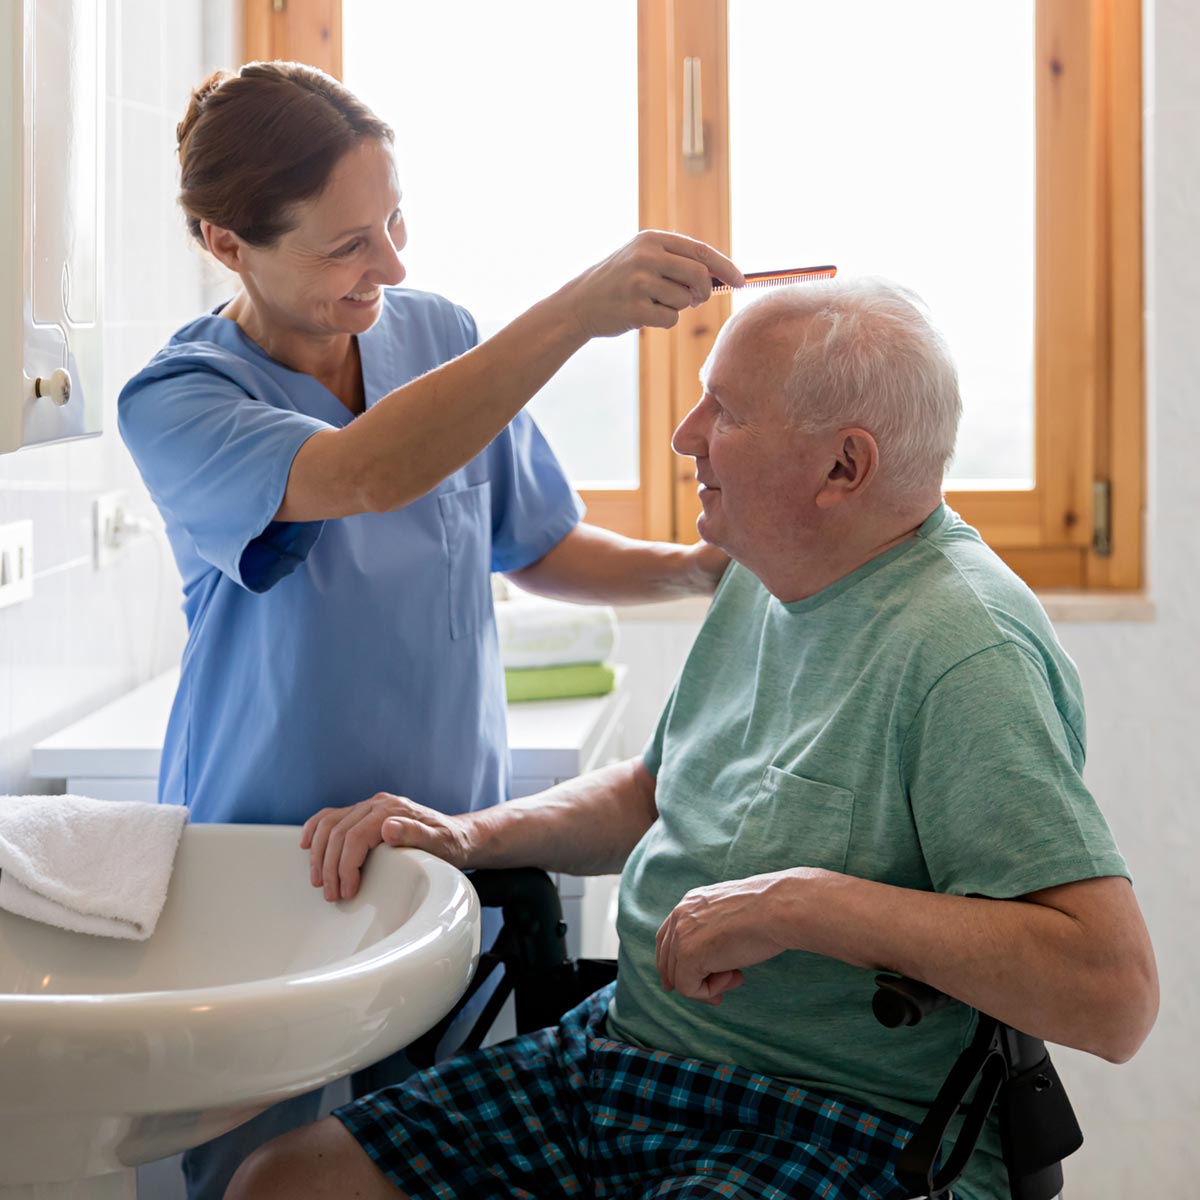 Caregiver combing an elderly man's hair